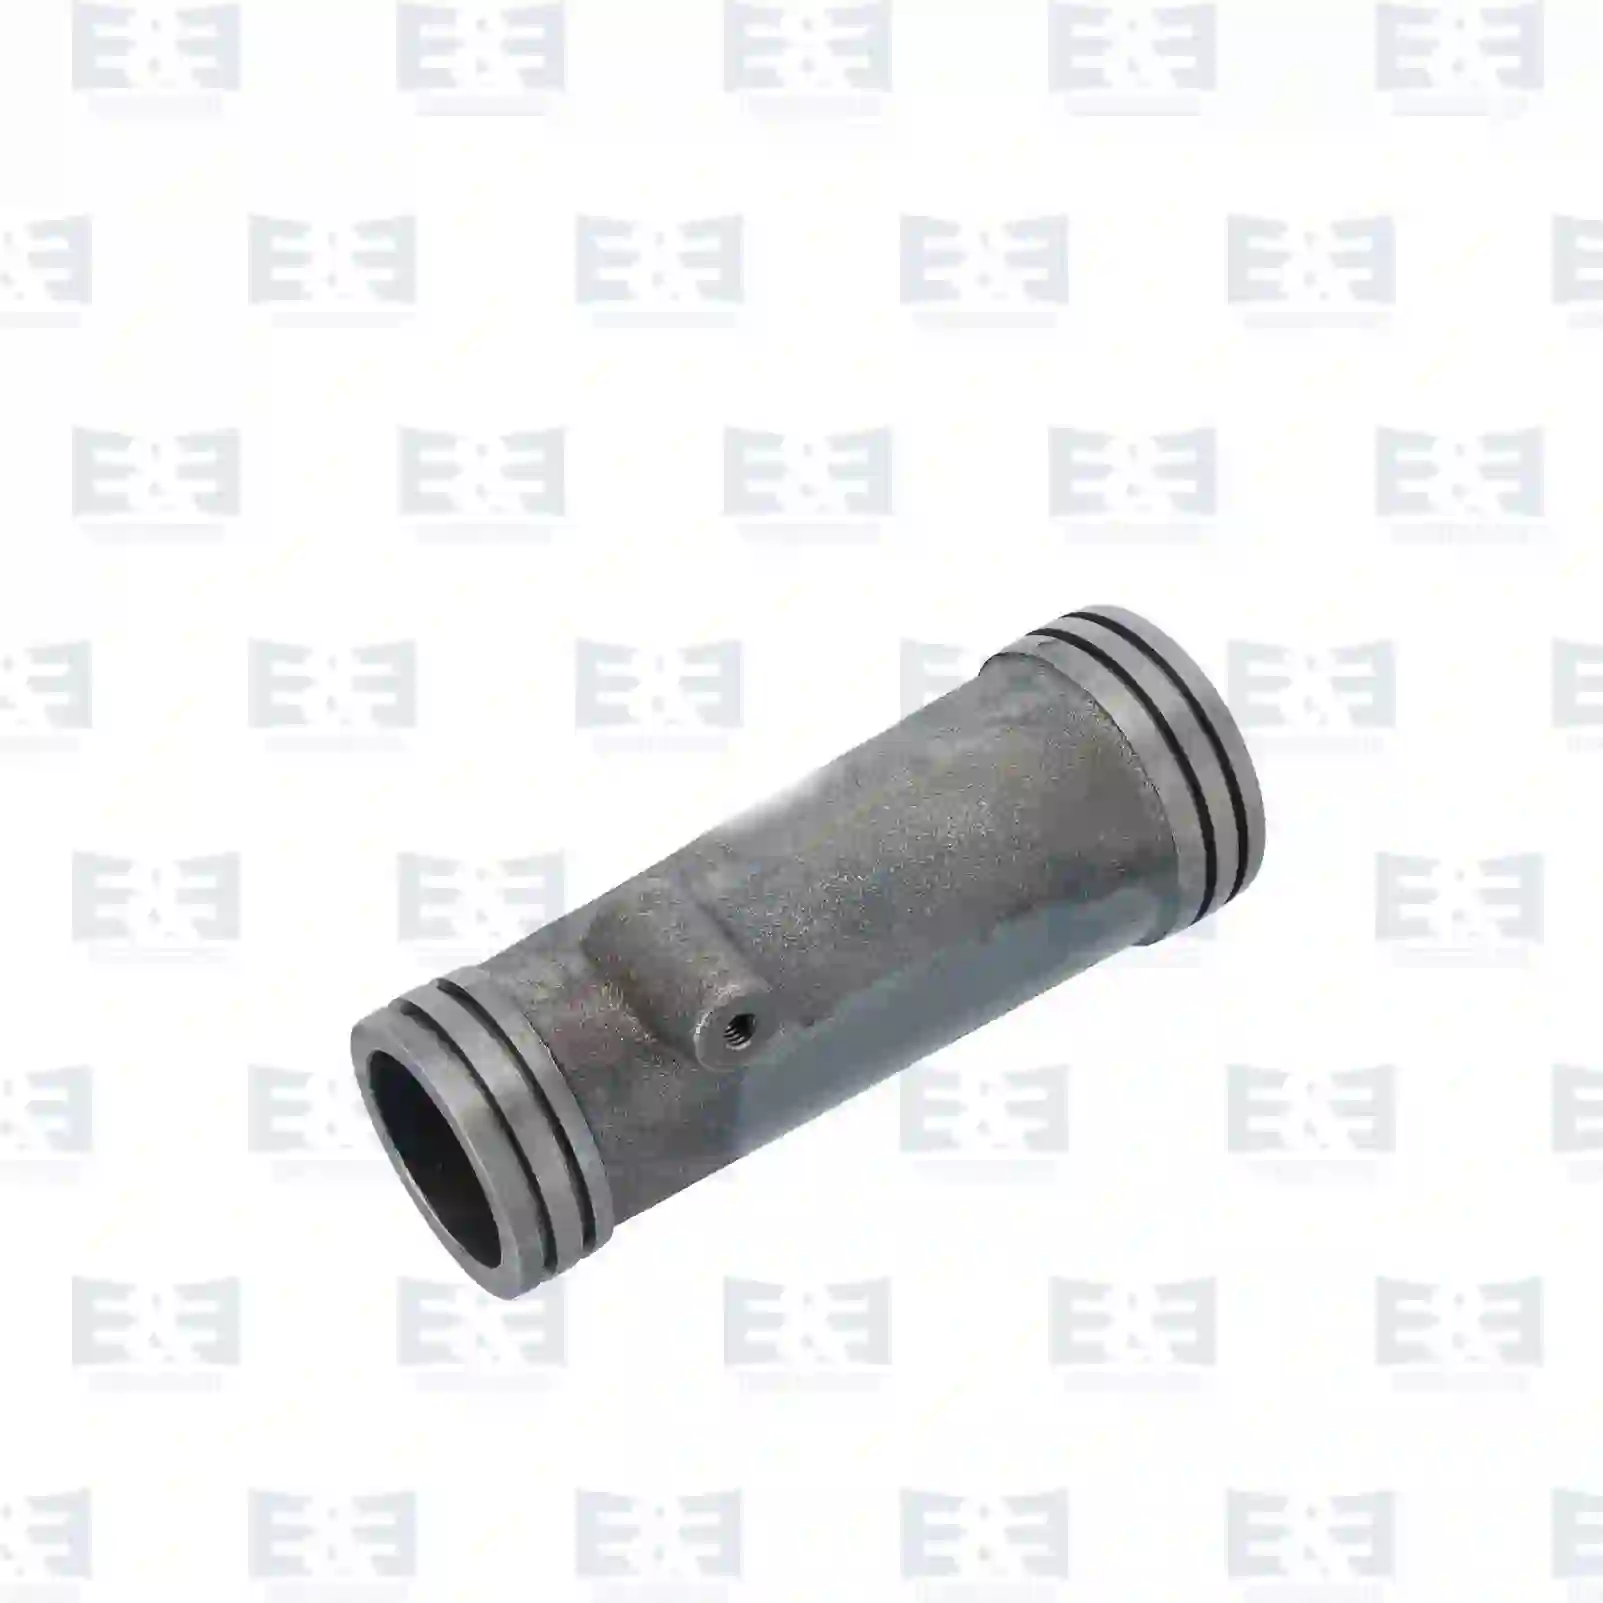  Exhaust manifold, right || E&E Truck Spare Parts | Truck Spare Parts, Auotomotive Spare Parts